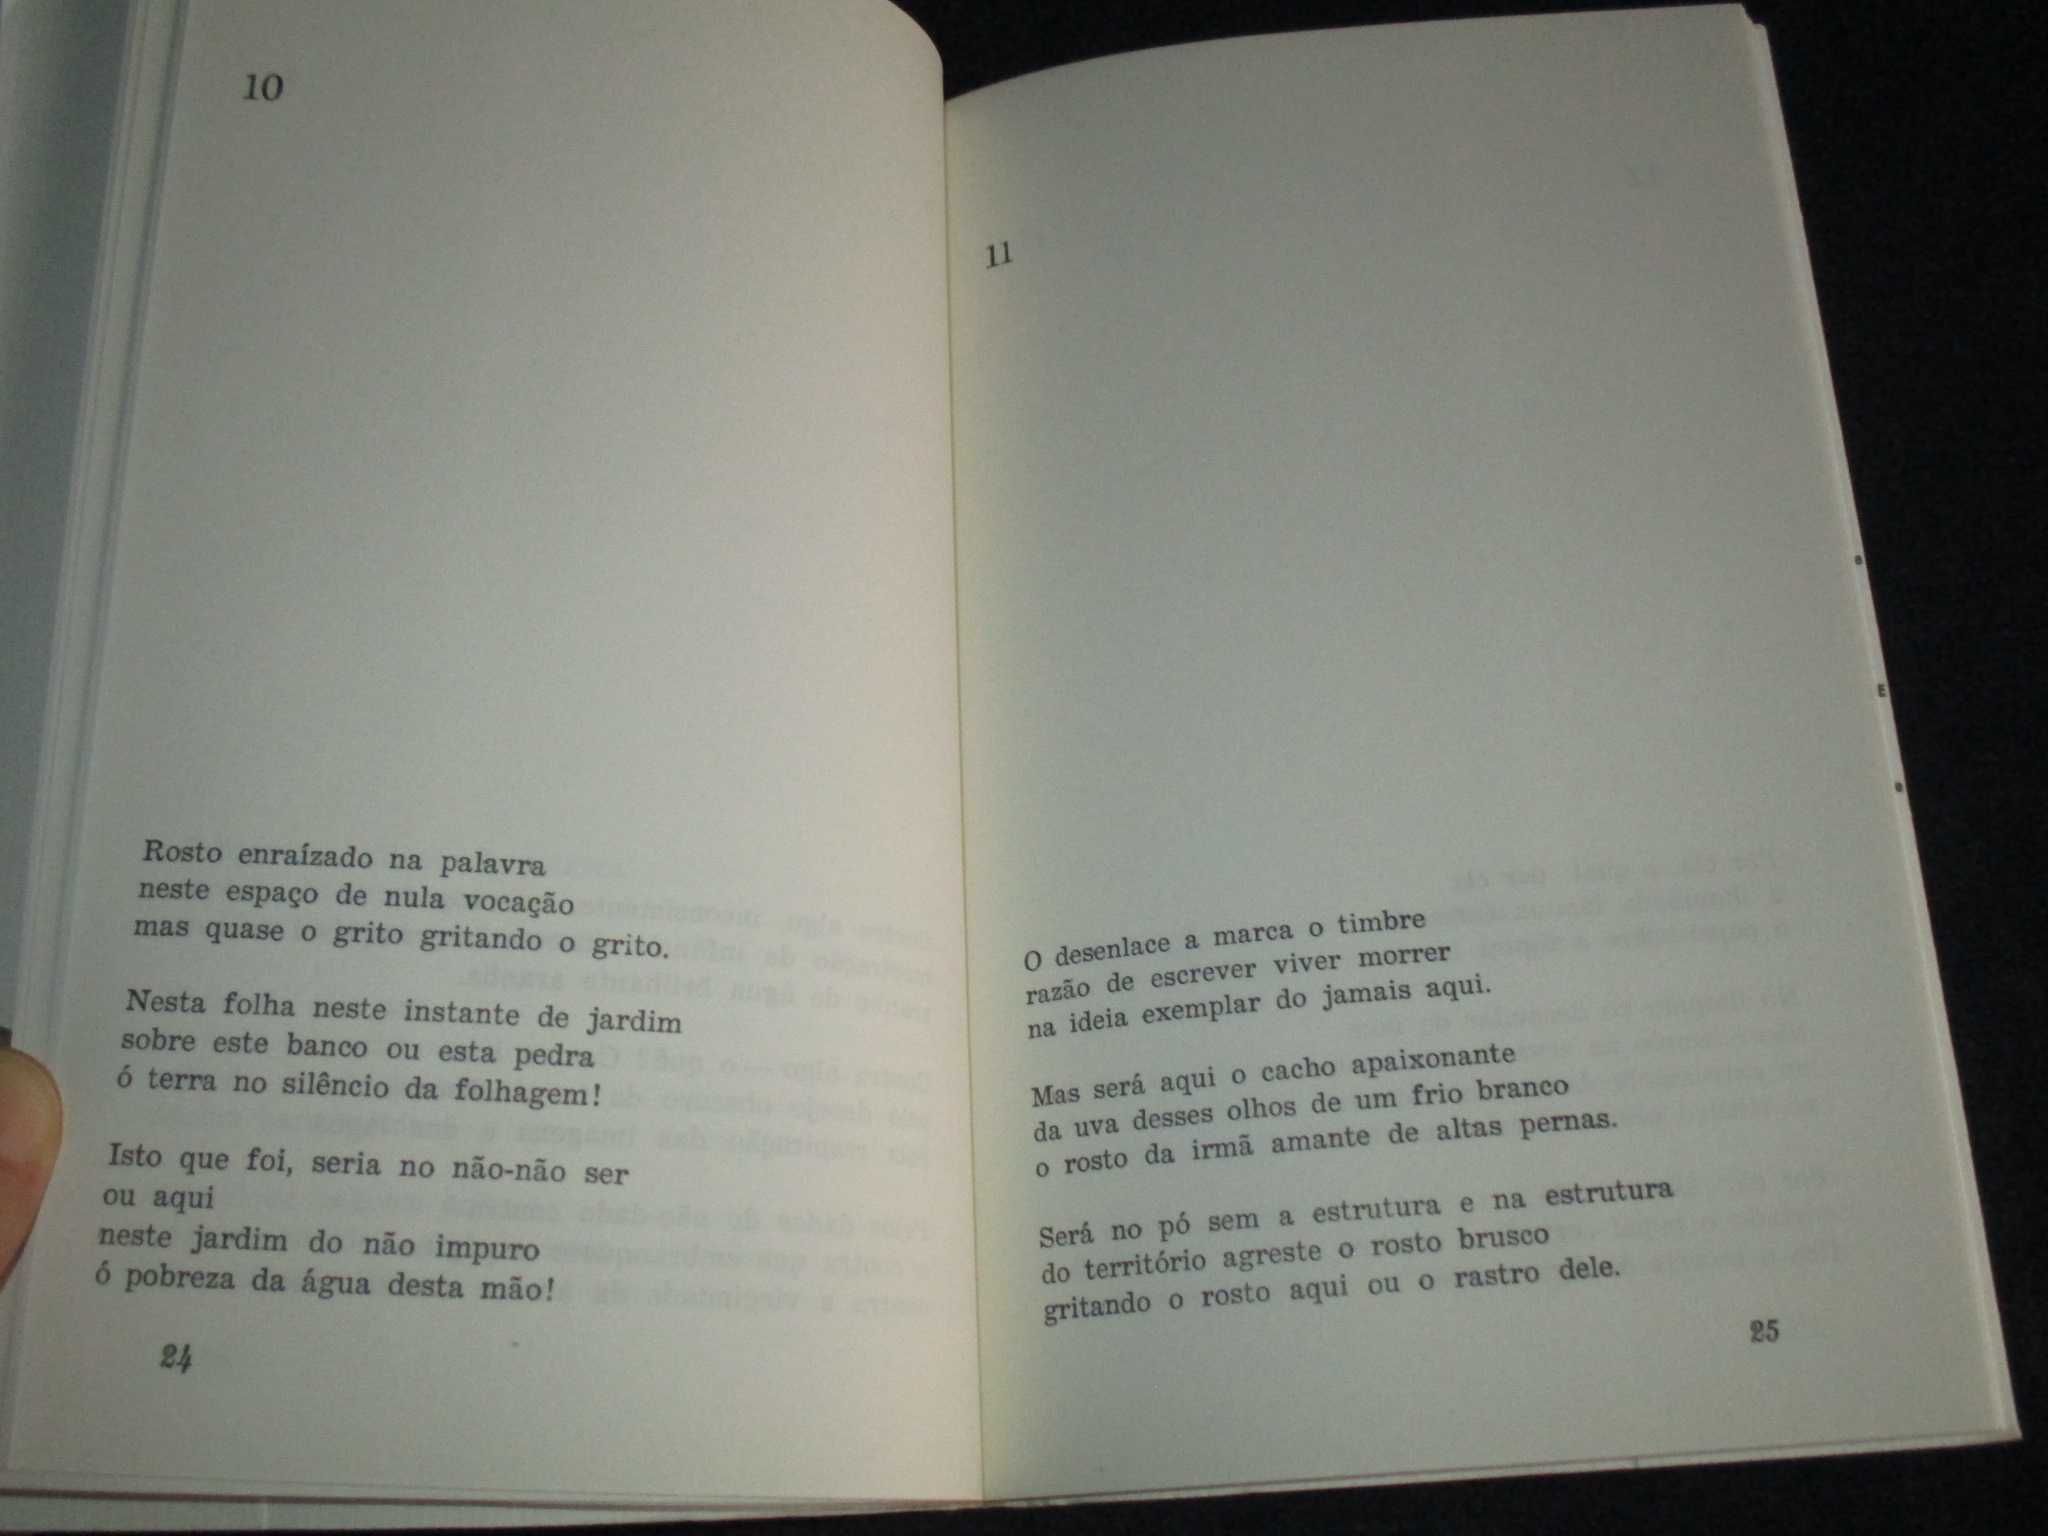 Livro O Incêndio dos Aspectos António Ramos Rosa 1ª edição